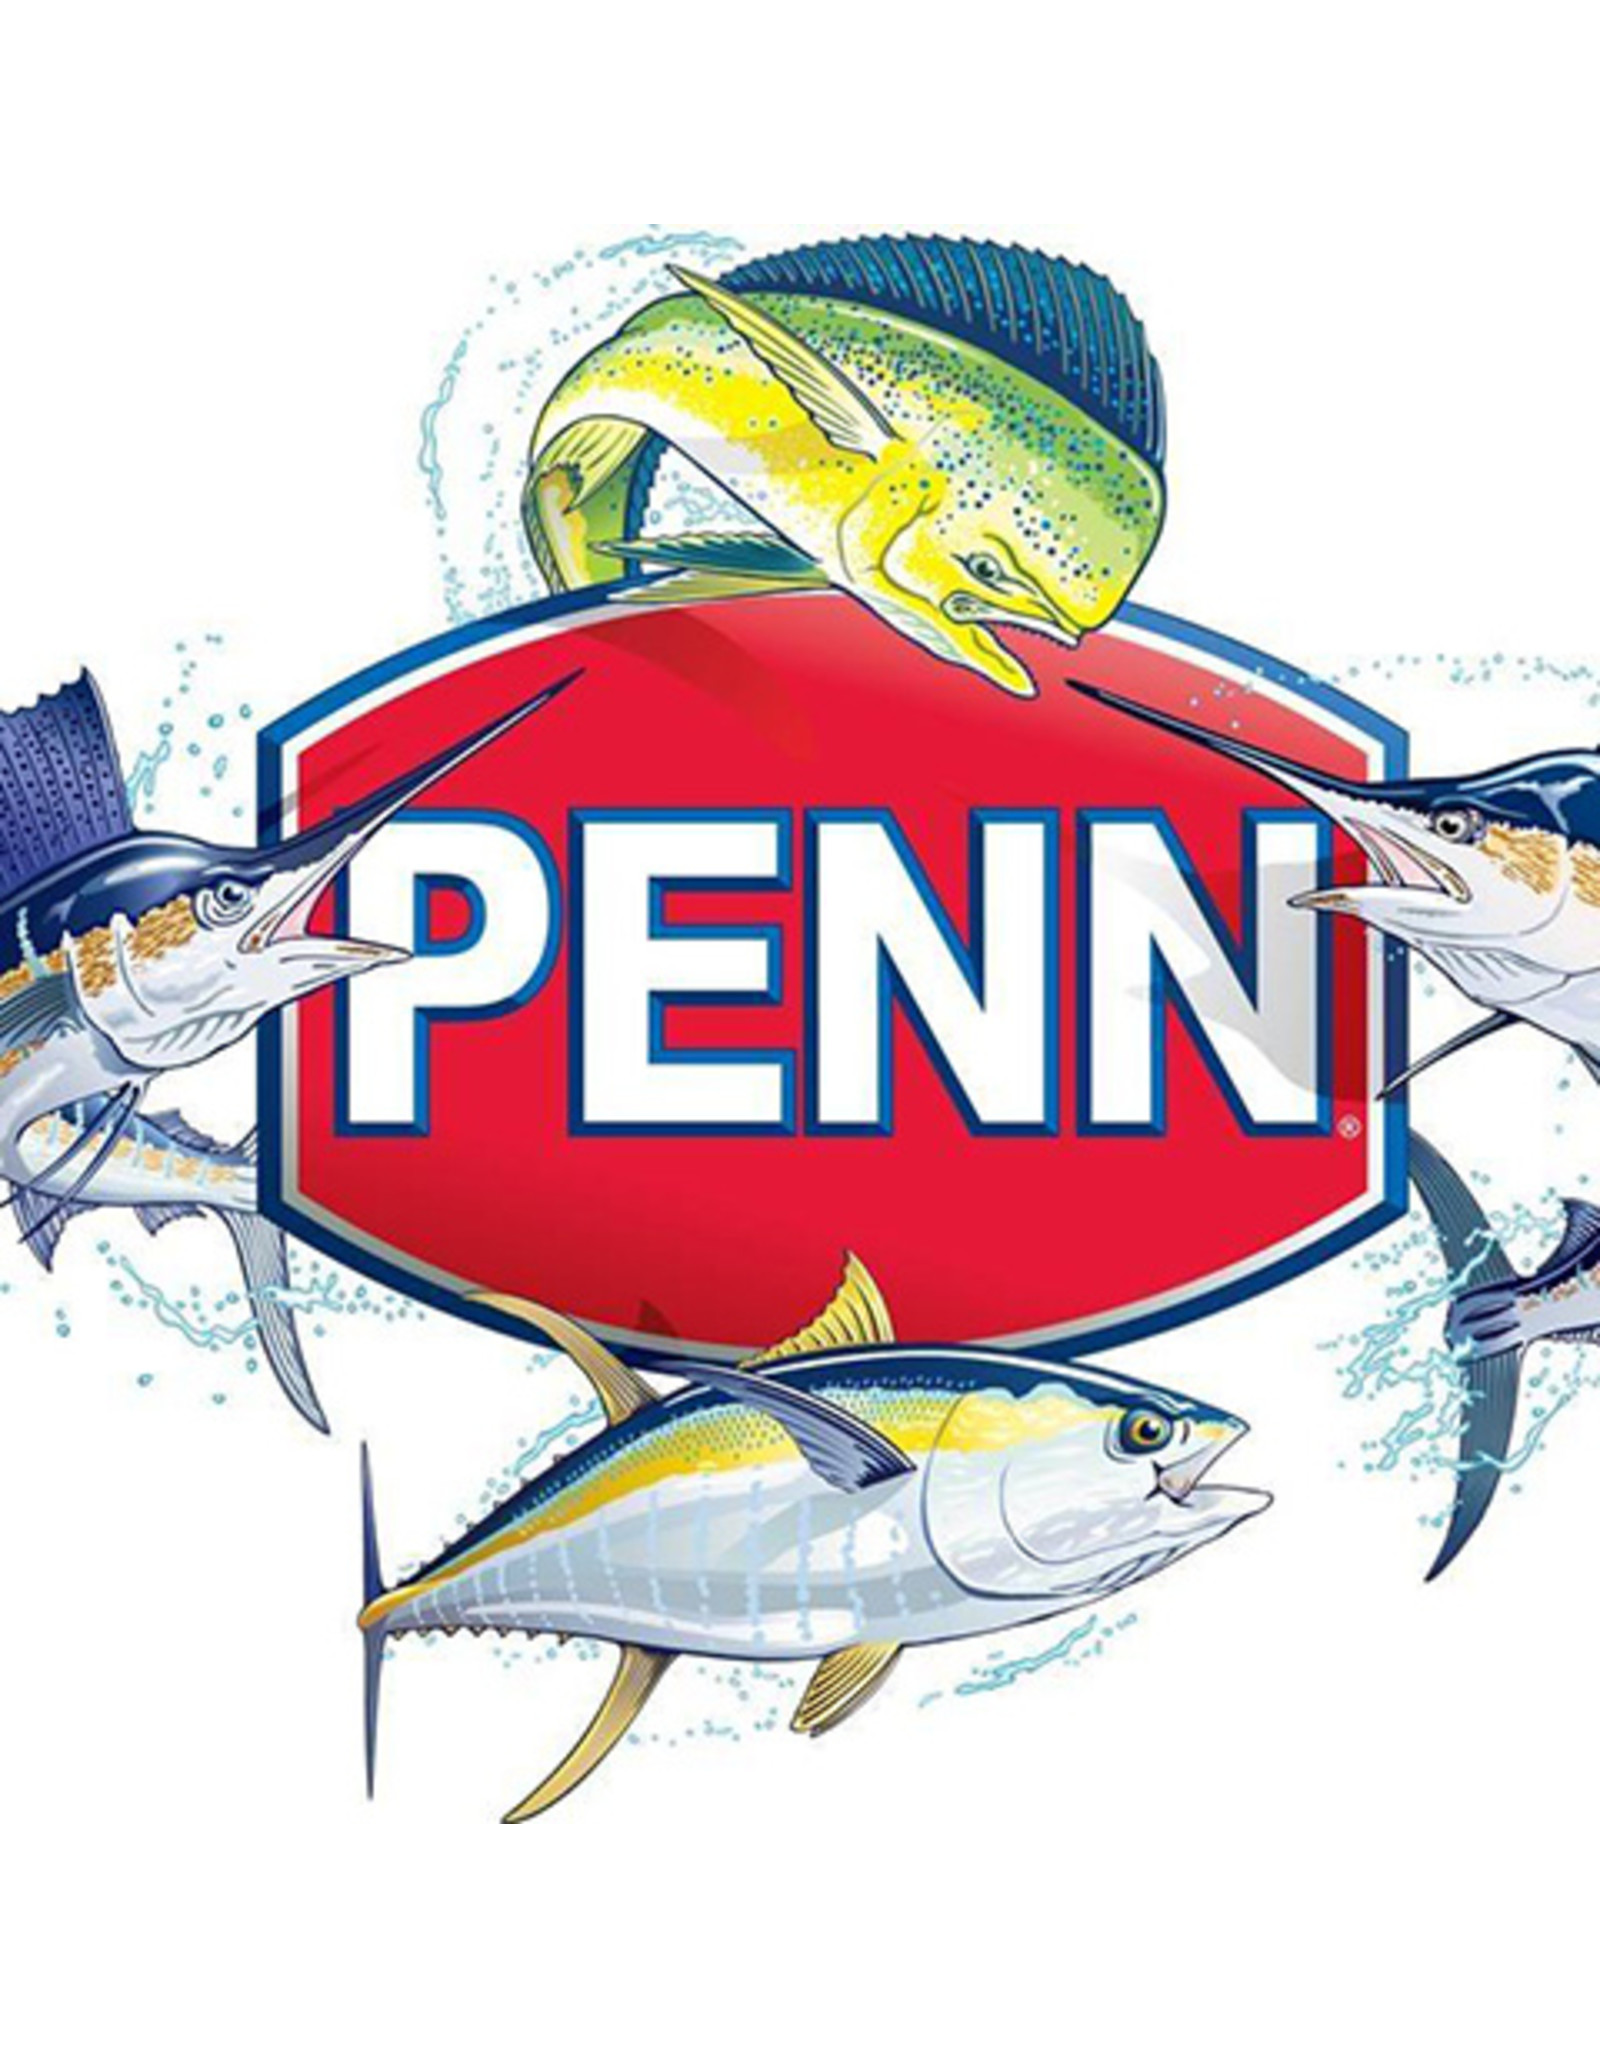 Penn 63B-875  GEAR MOUNTING SCREWS (2 REQ.)/ NLA